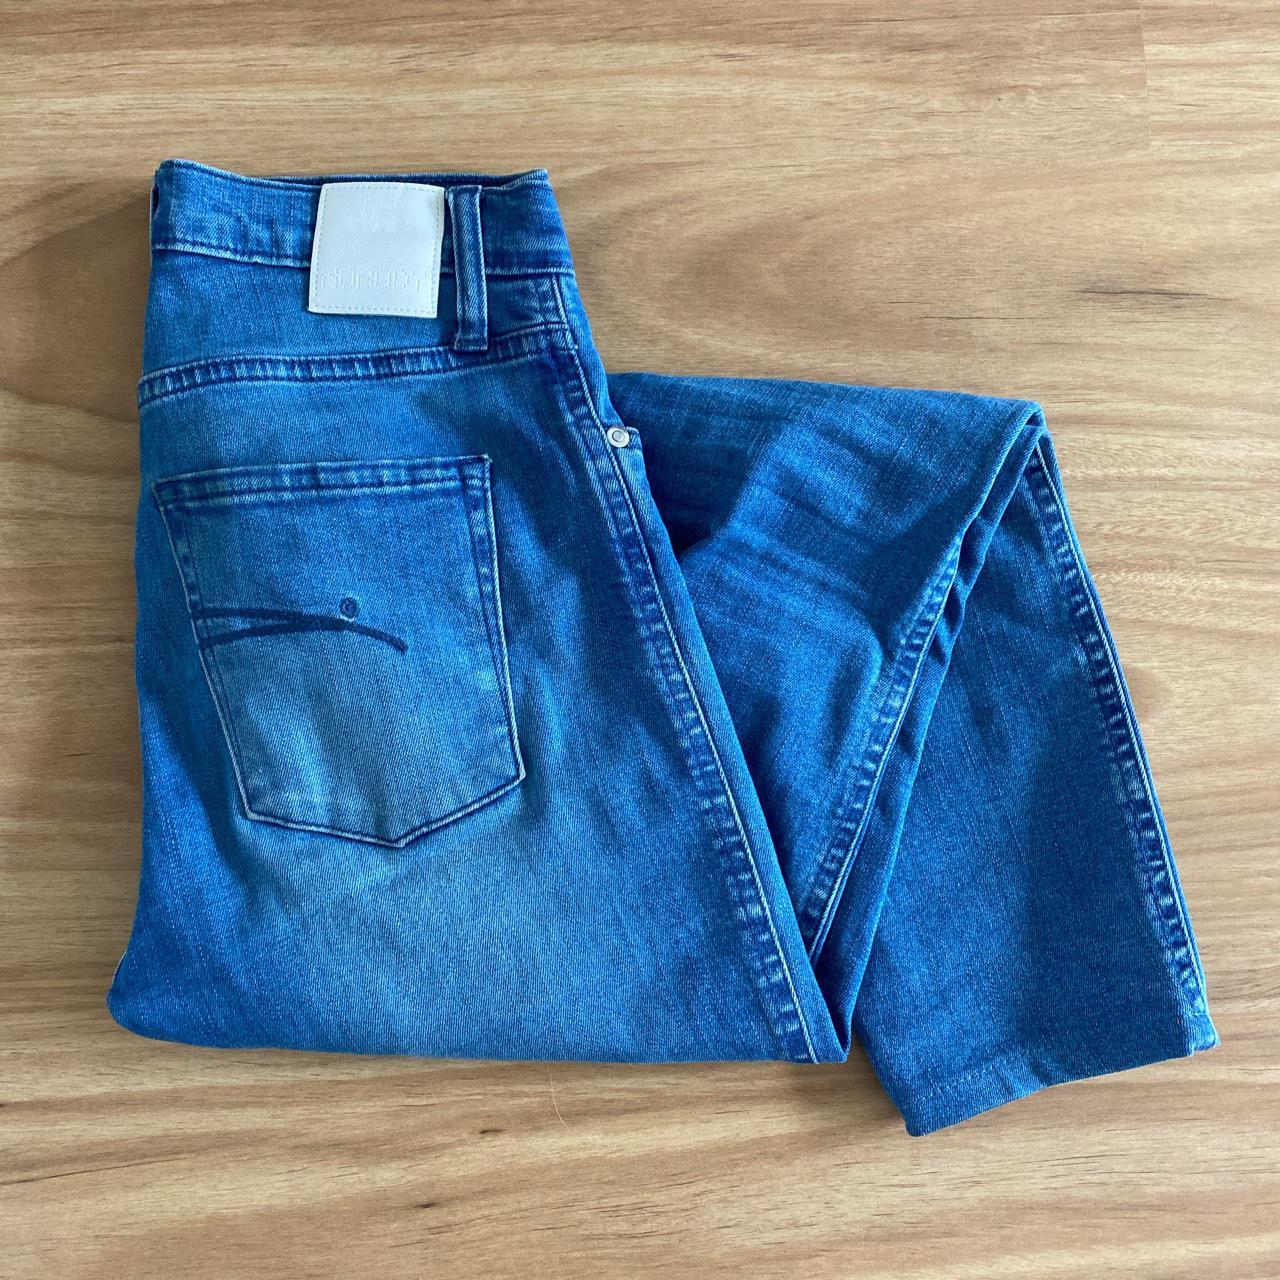 Light blue wash Nobody Denim jeans, size 25. Cult... - Depop